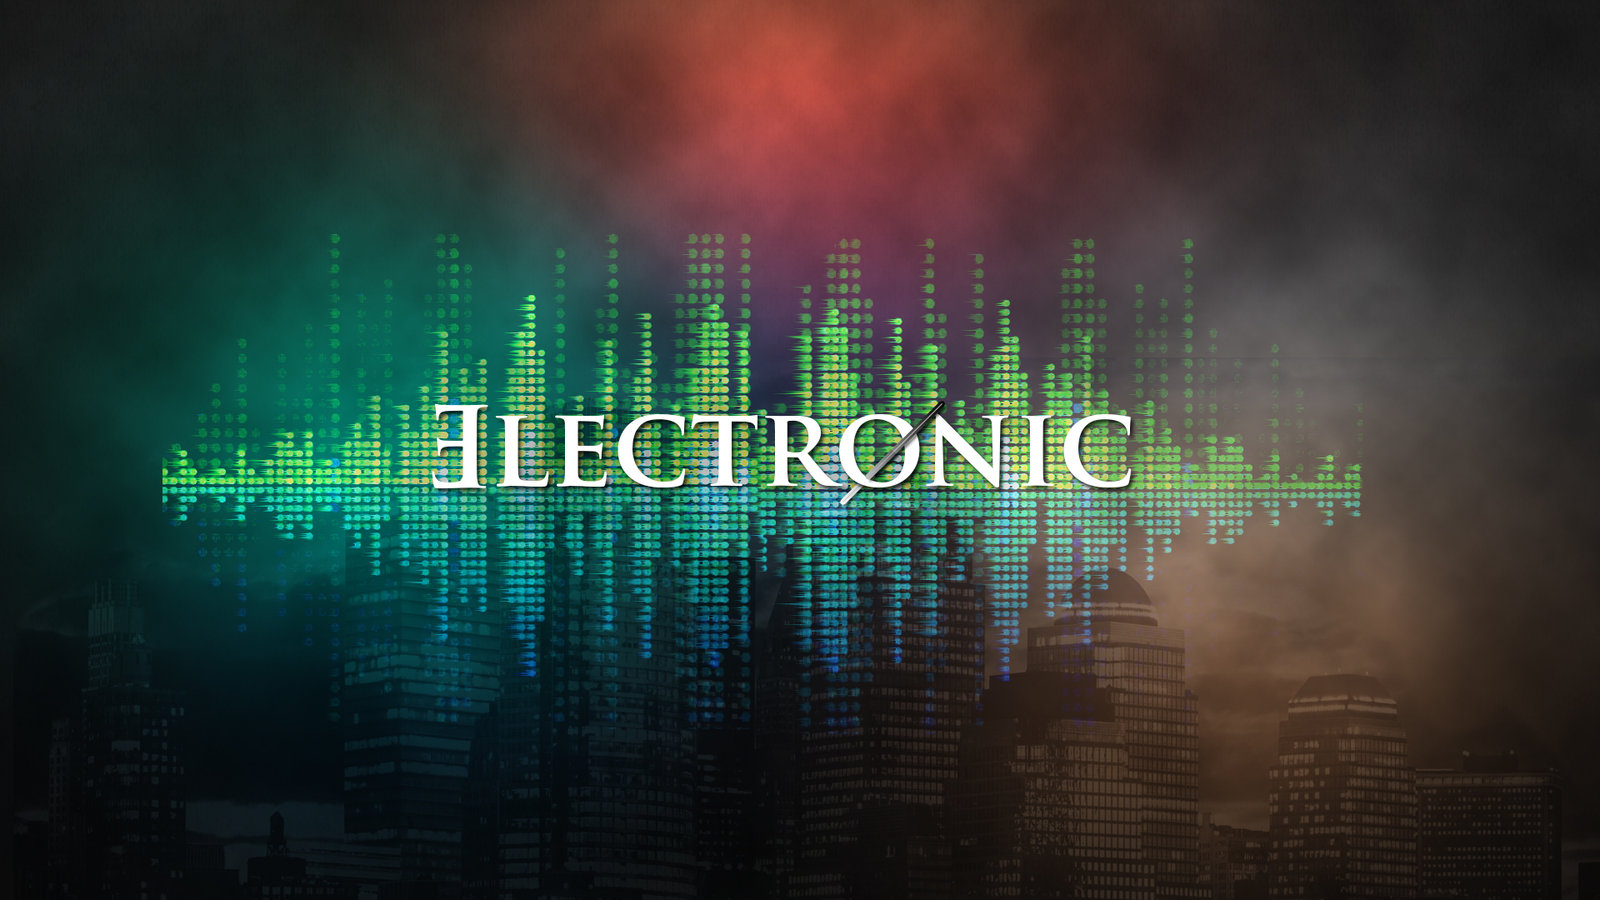 Electronic Music V2 By Mr Zd